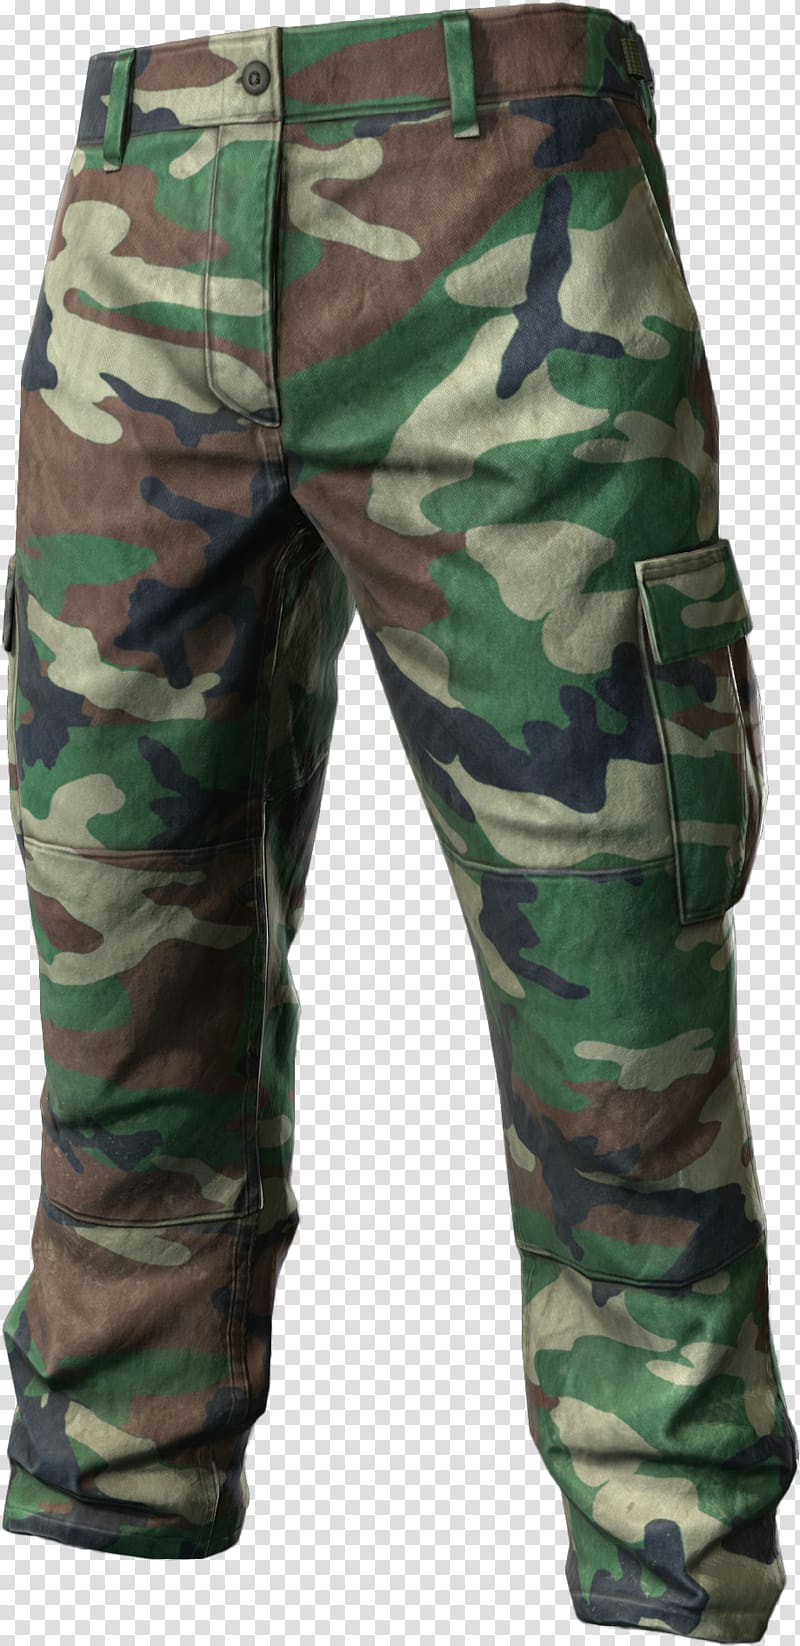 DayZ Cargo pants Jeans Military uniform, pant transparent background PNG clipart